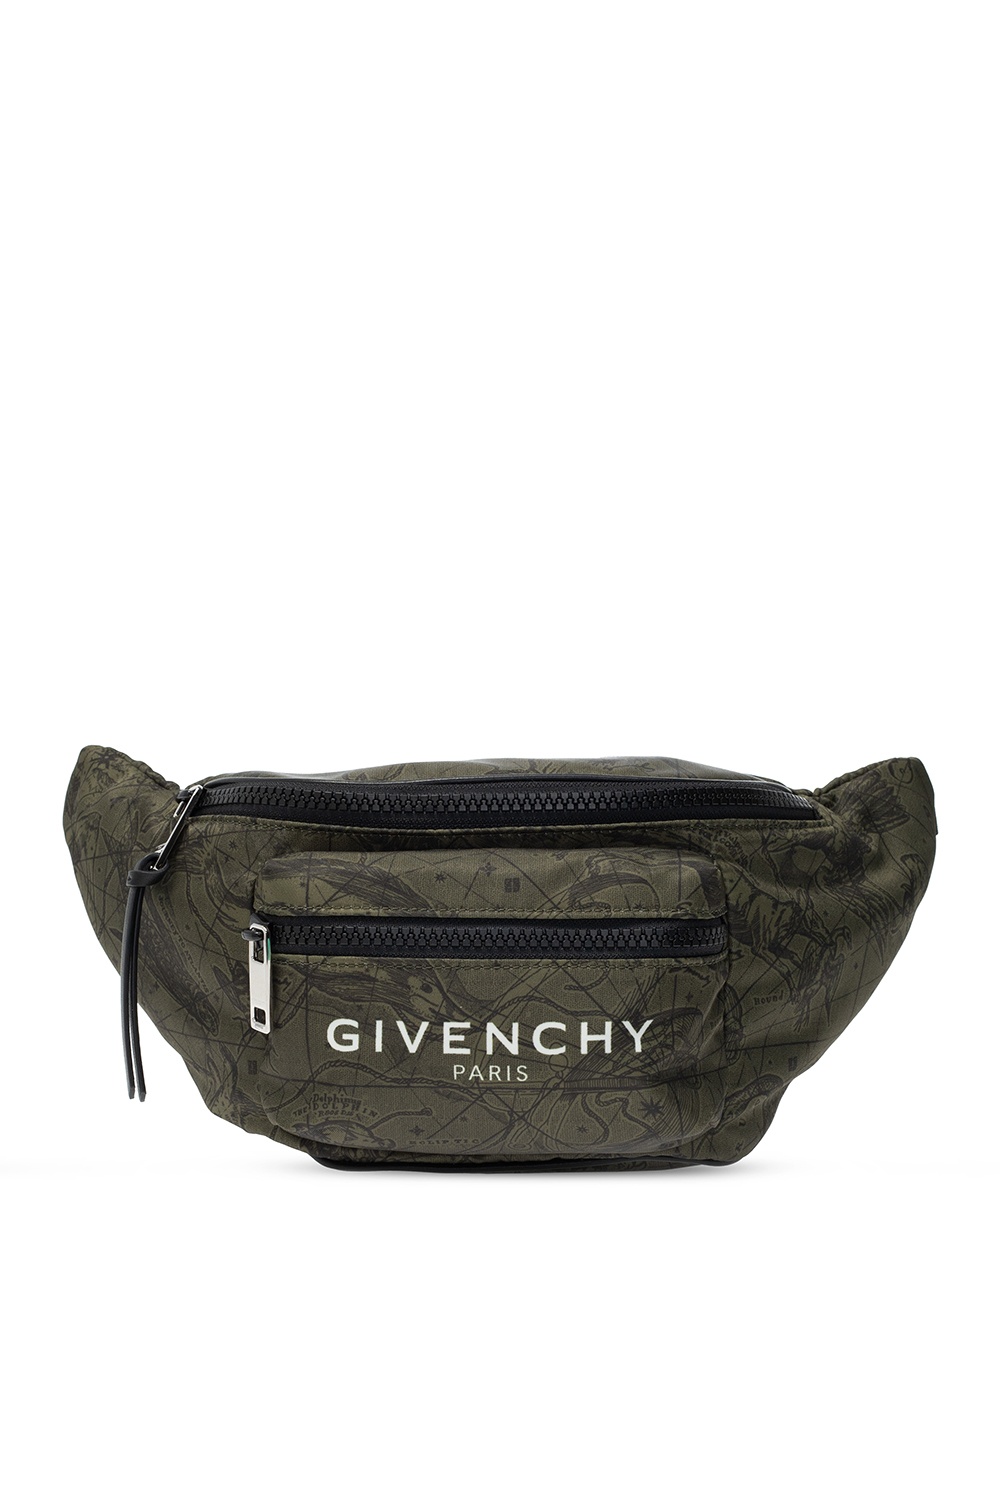 givenchy fanny bag